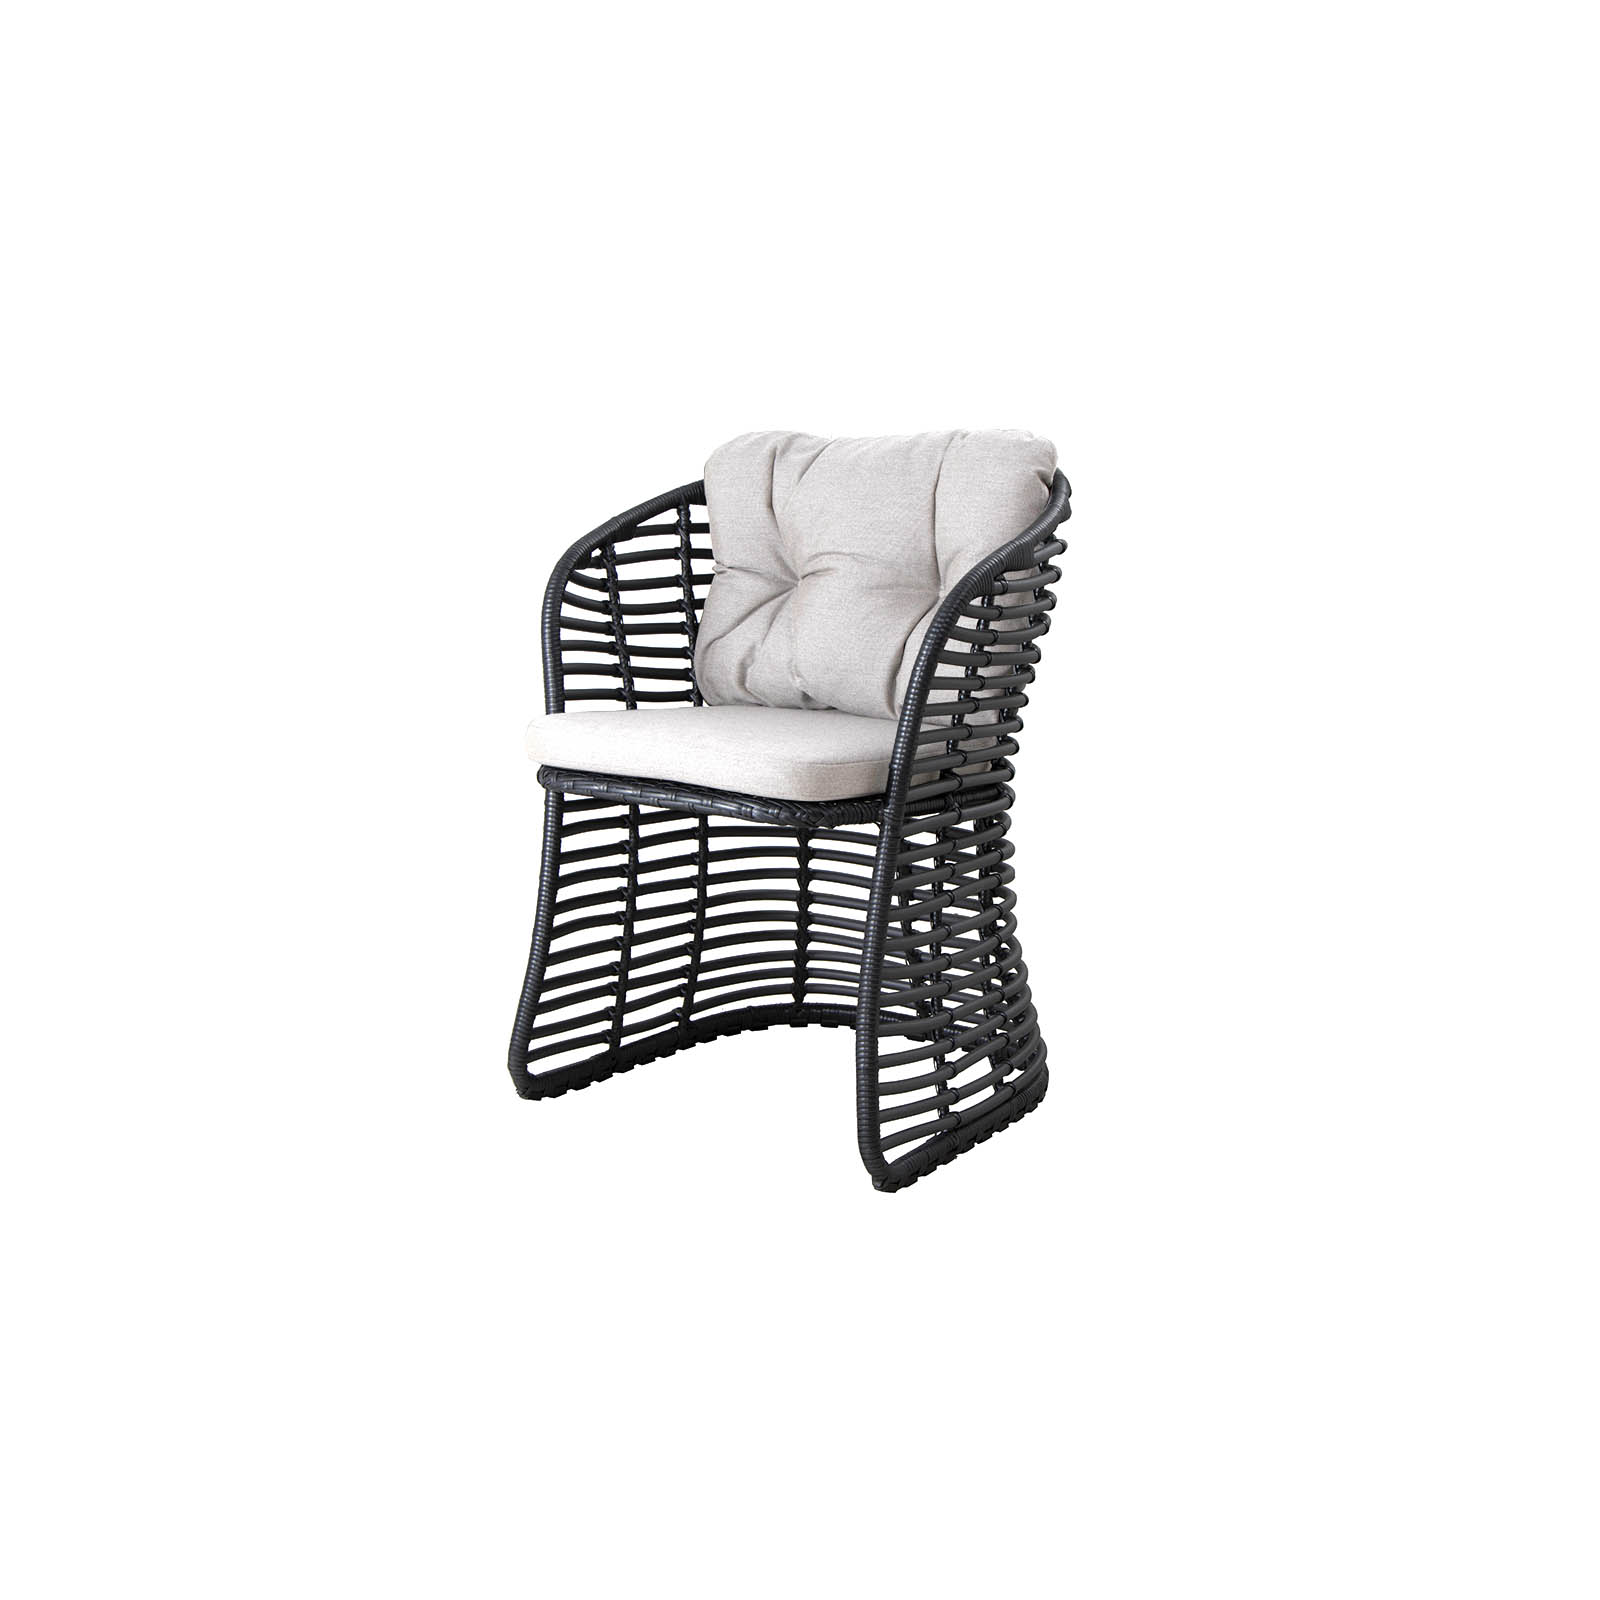 Sessel Basket aus CL Weave in Graphite mit Kissen aus CL Natté in Light Grey